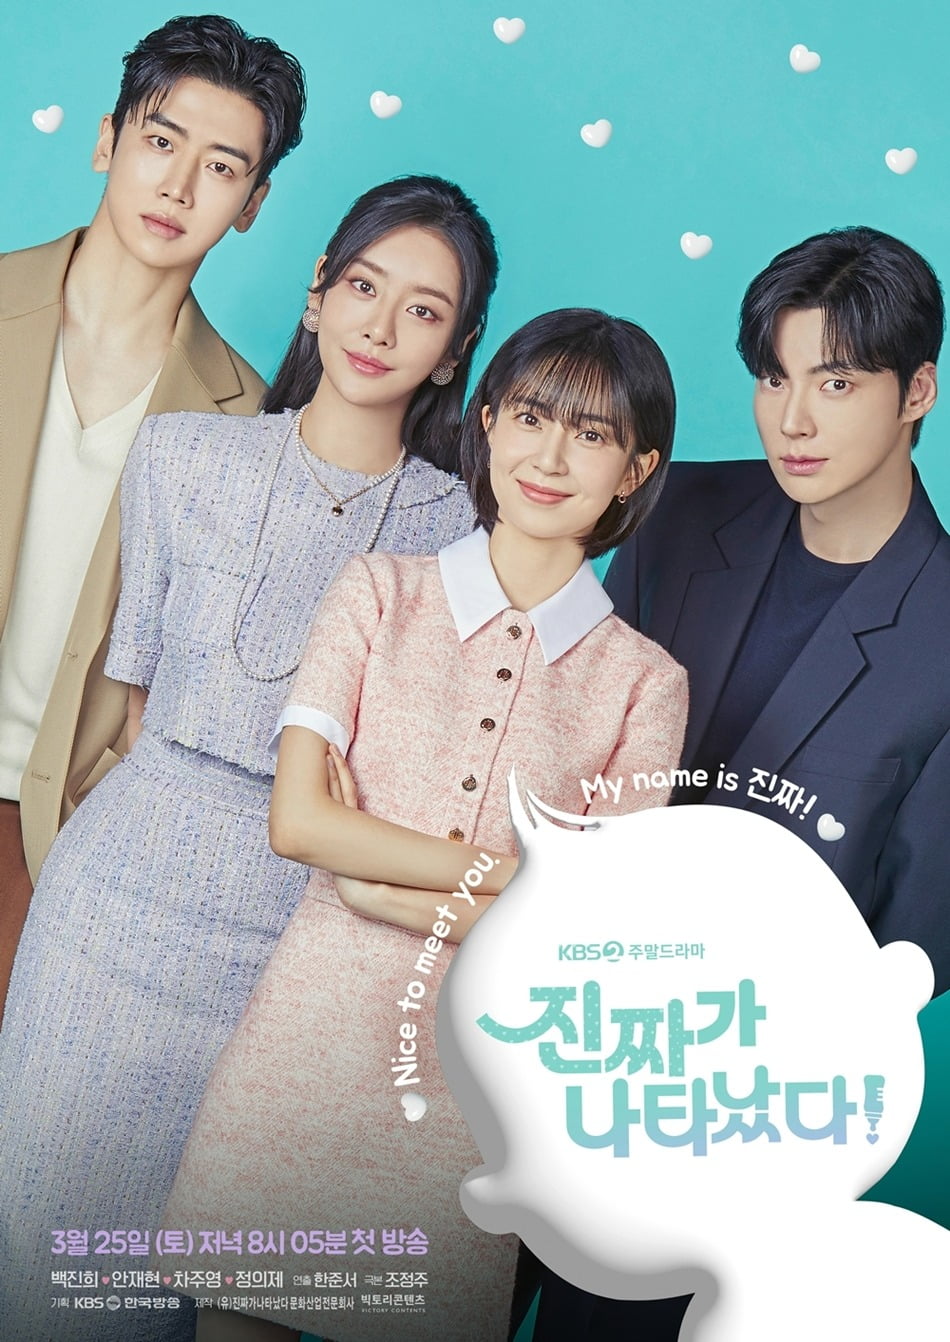 빅텐츠가 제작한 KBS드라마 '진짜가 나타났다' 포스터. 